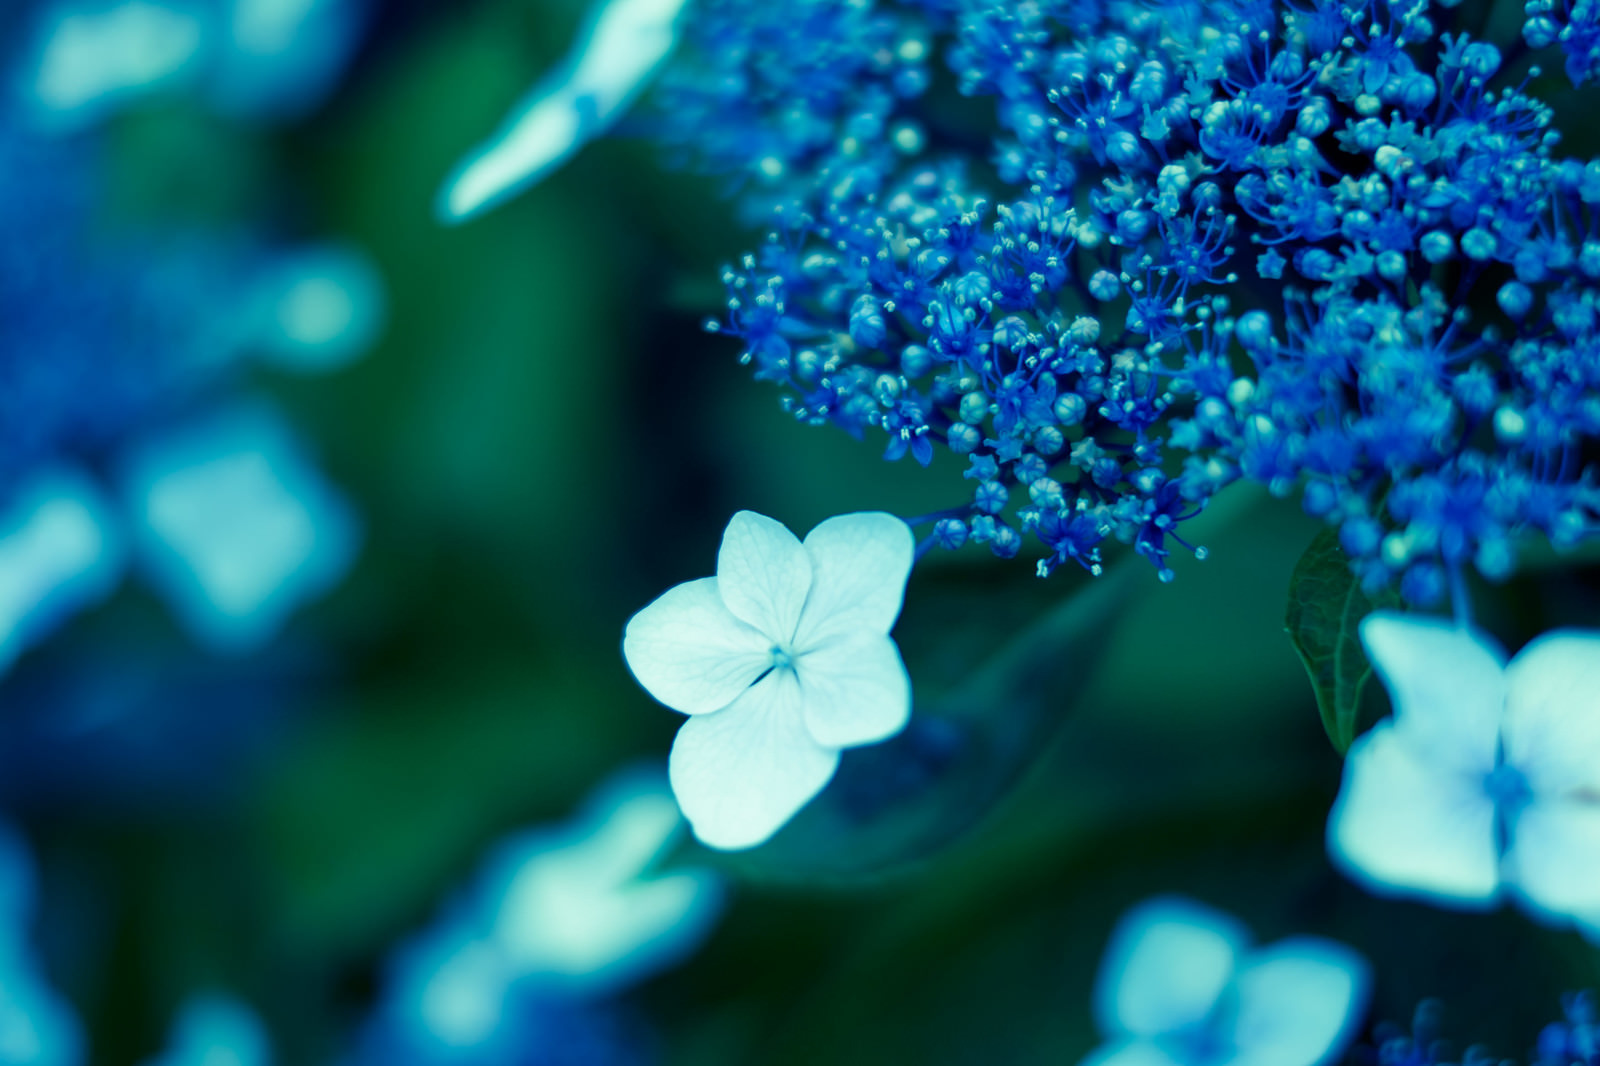 「ガクアジサイの花 | フリー素材のぱくたそ」の写真